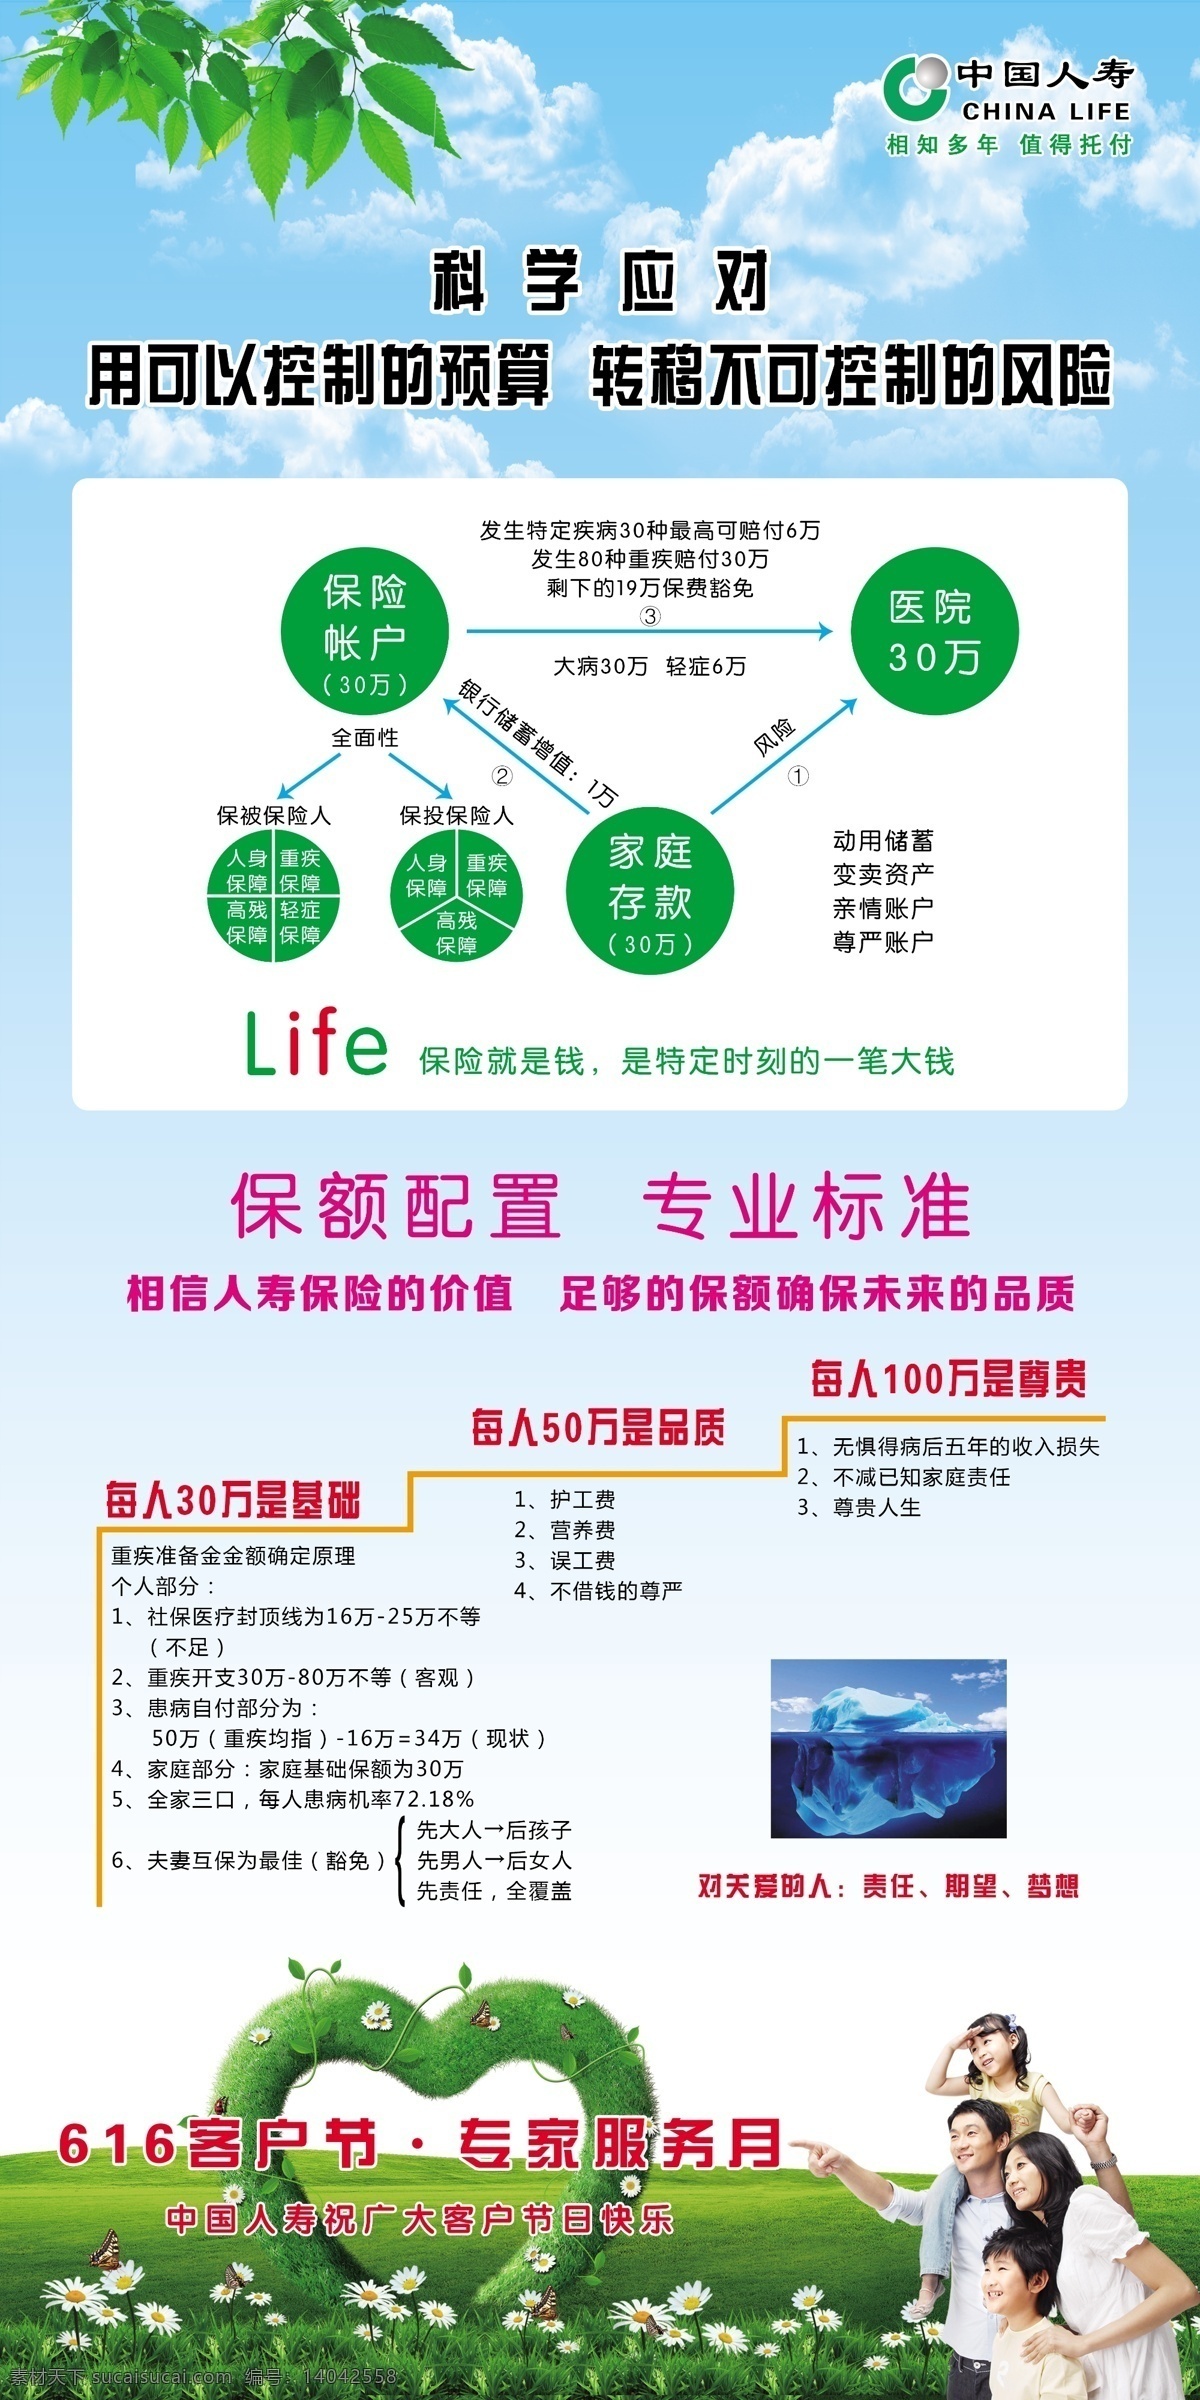 中国人寿保险 中国人寿 客户节 专家服务月 人寿 保险